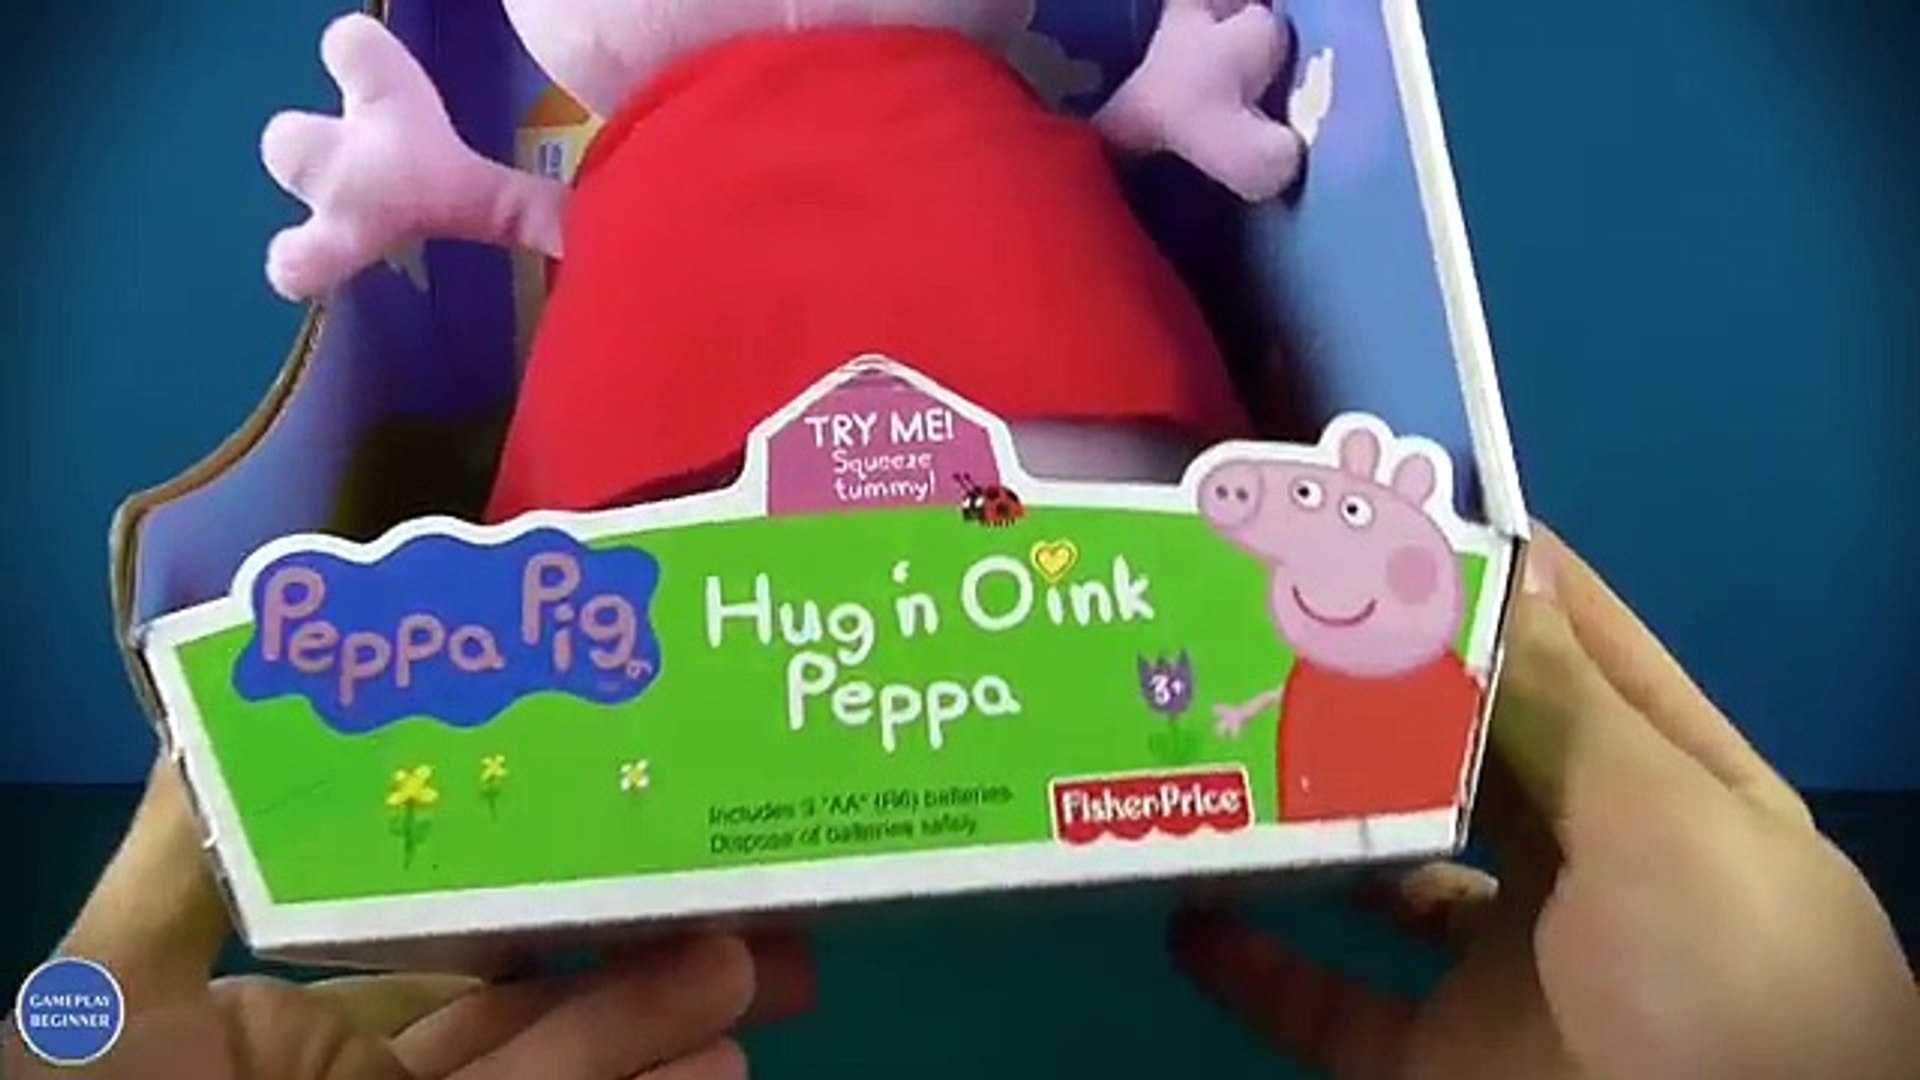 peppa pig hug n oink